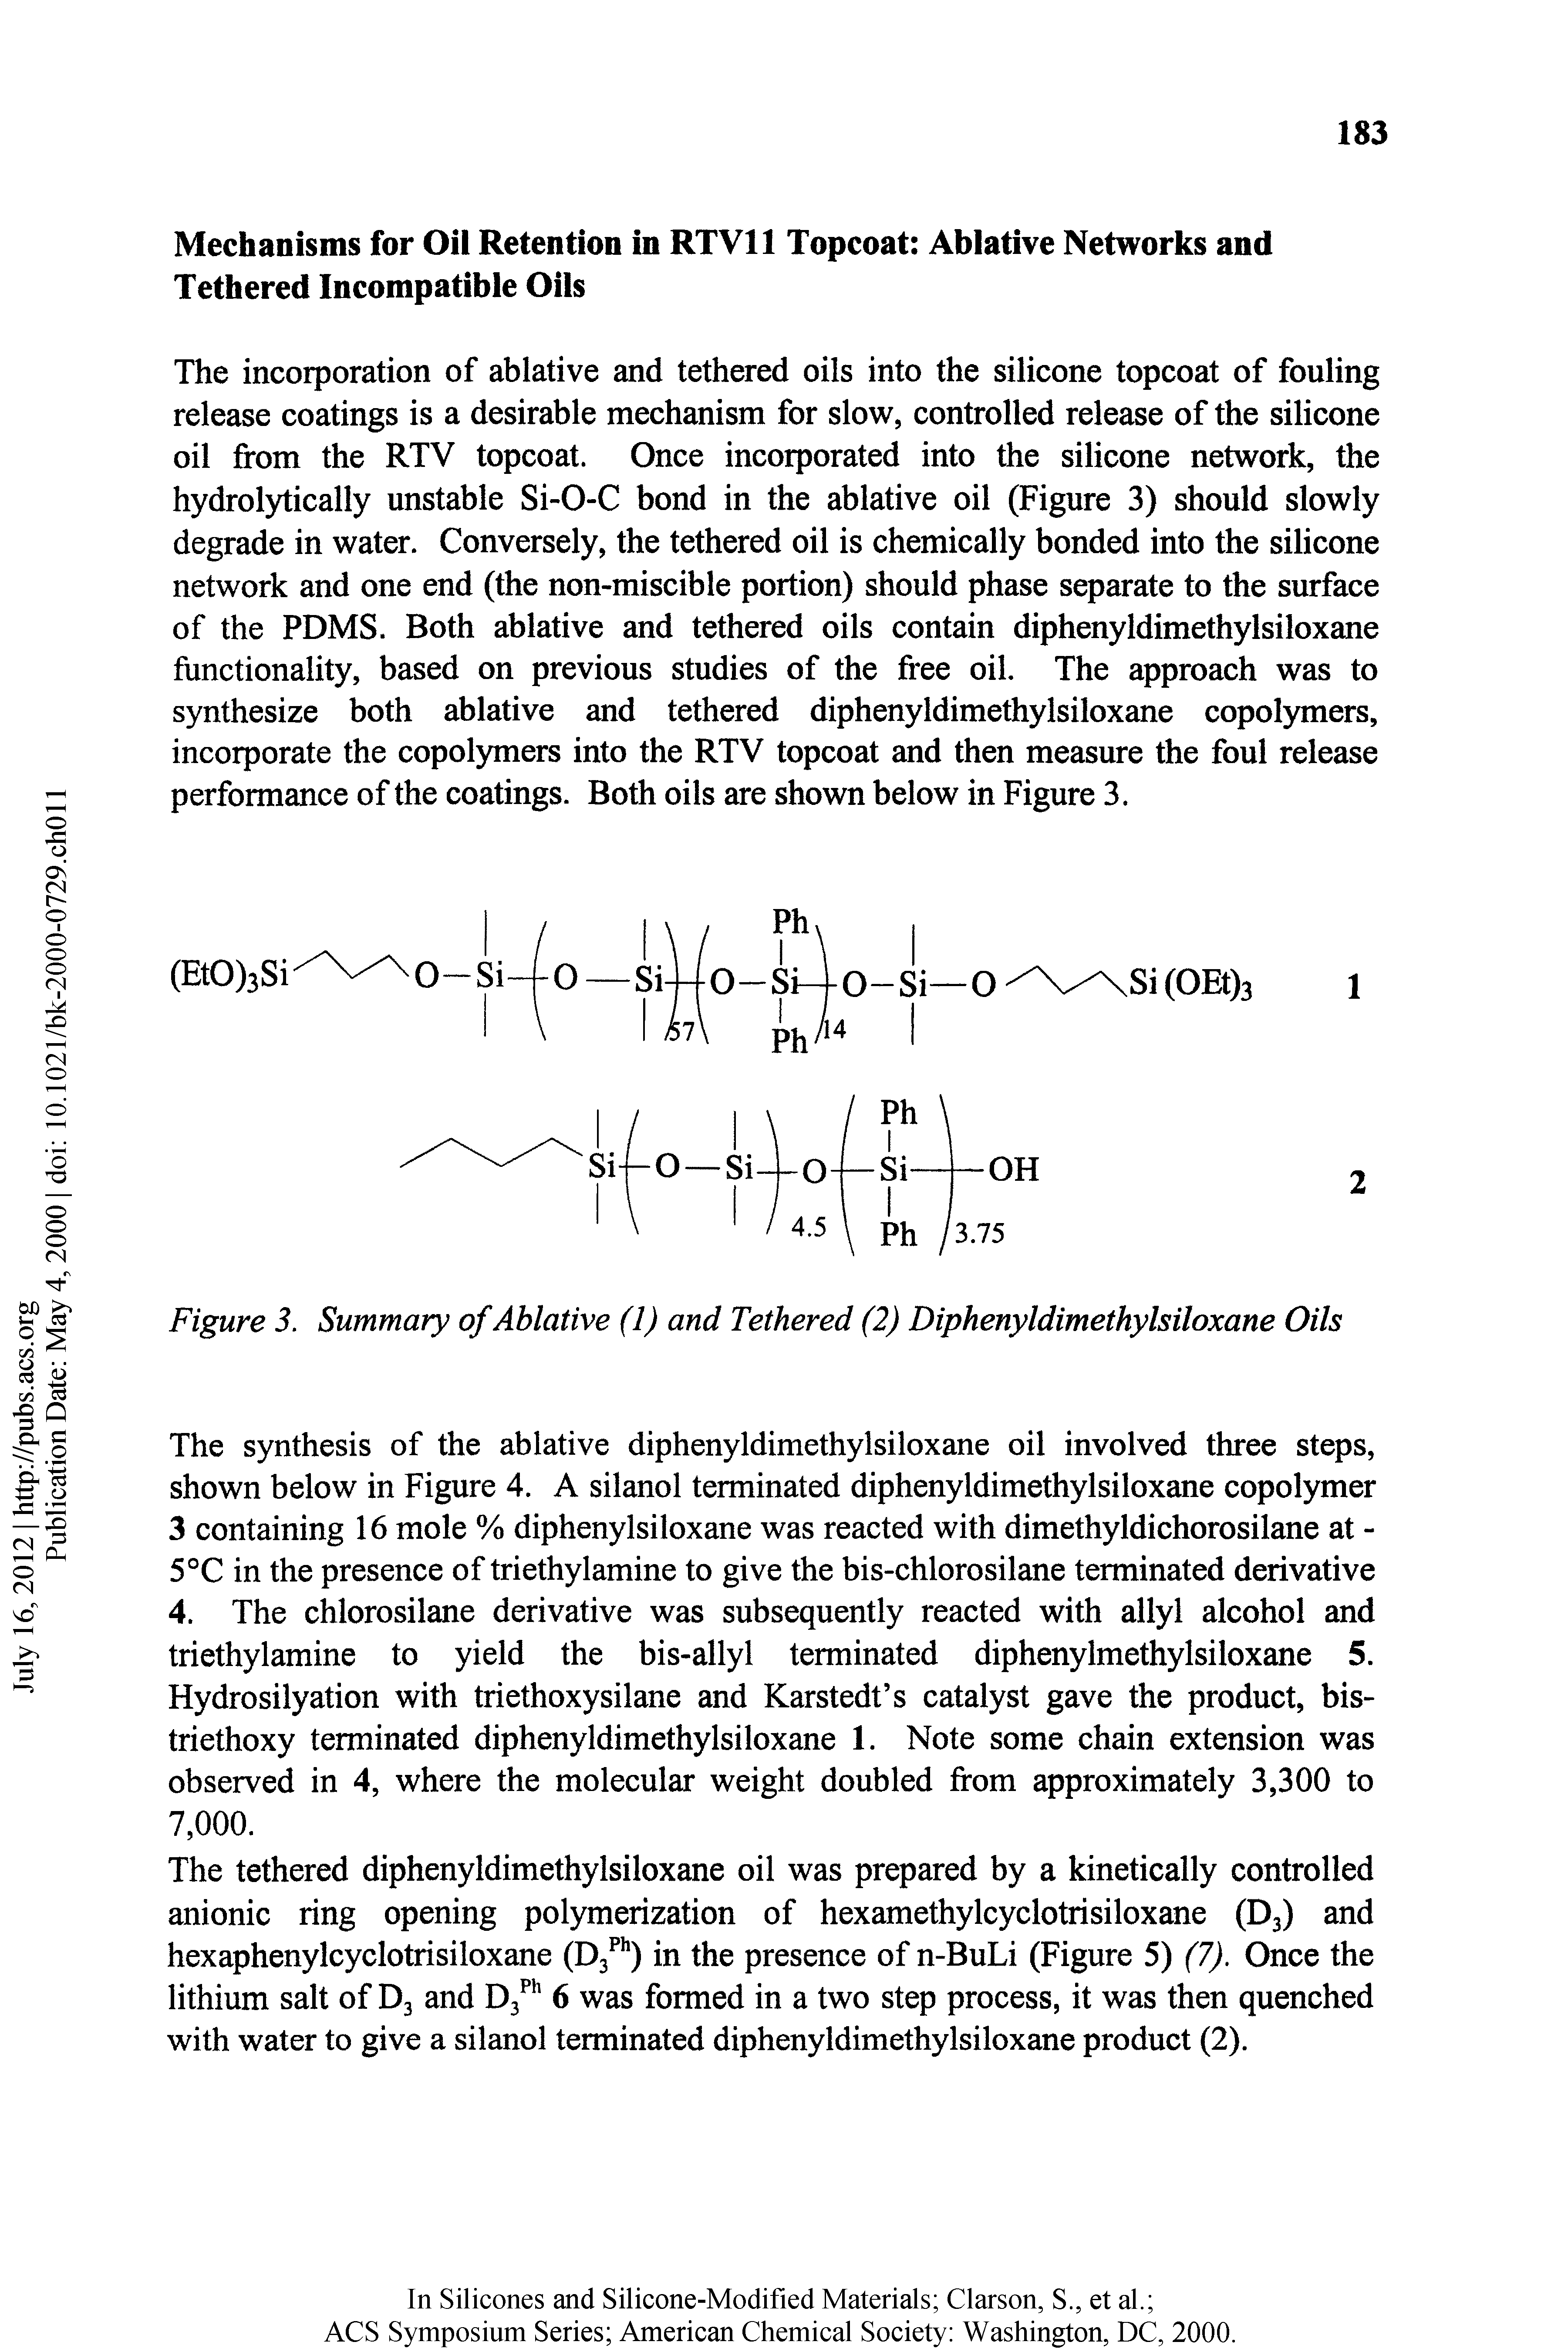 Figure 3. Summary of Ablative (1) and Tethered (2) Diphenyldimethylsiloxane Oils...